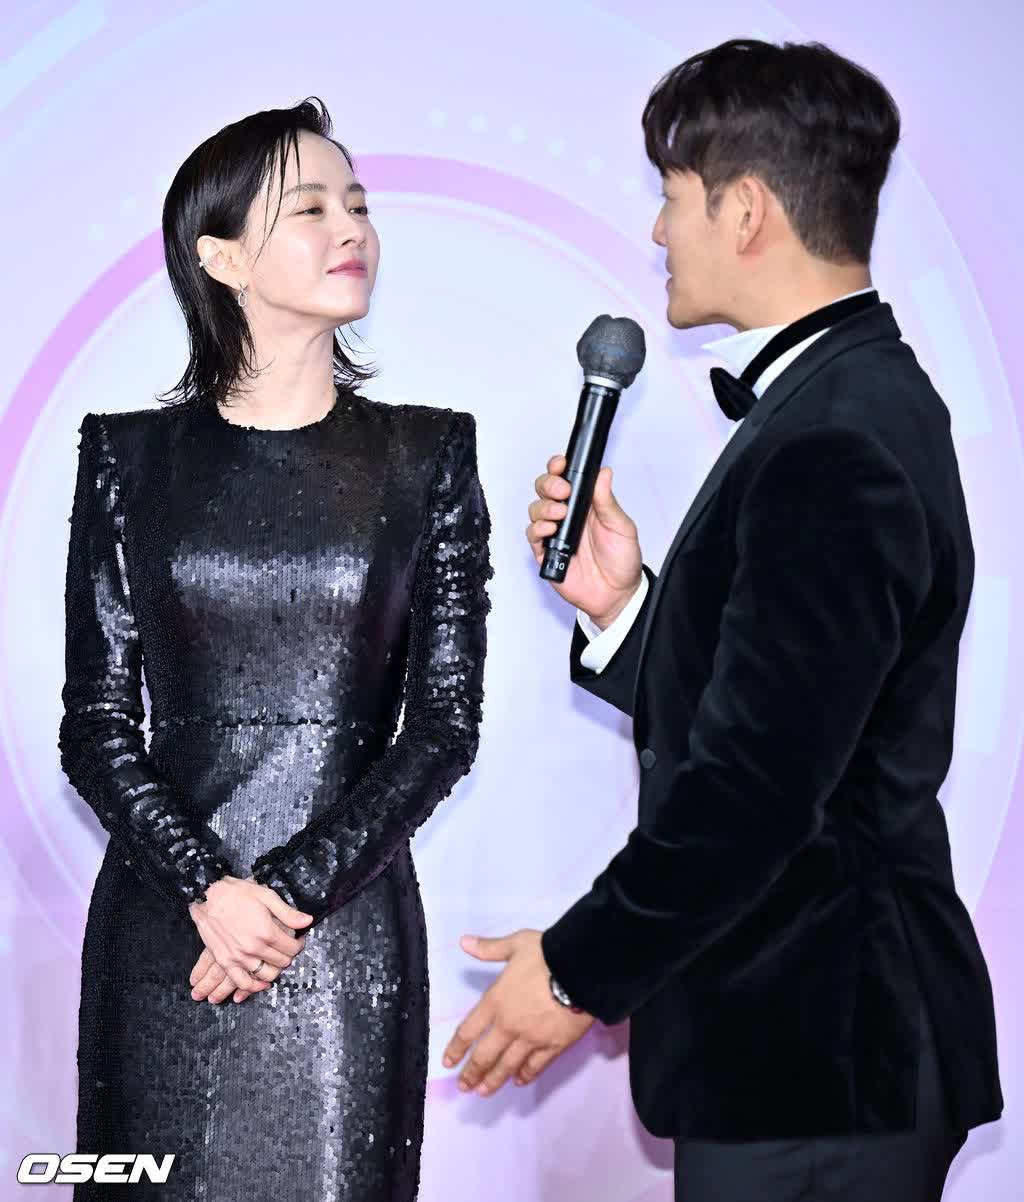 Thảm đỏ SBS Entertainment Awards 2022: Jeon So Min - Song Ji Hyo lột xác ấn tượng nhưng vẫn bị bộ đôi danh hài tạo dáng lố chiếm spotlight - Ảnh 5.